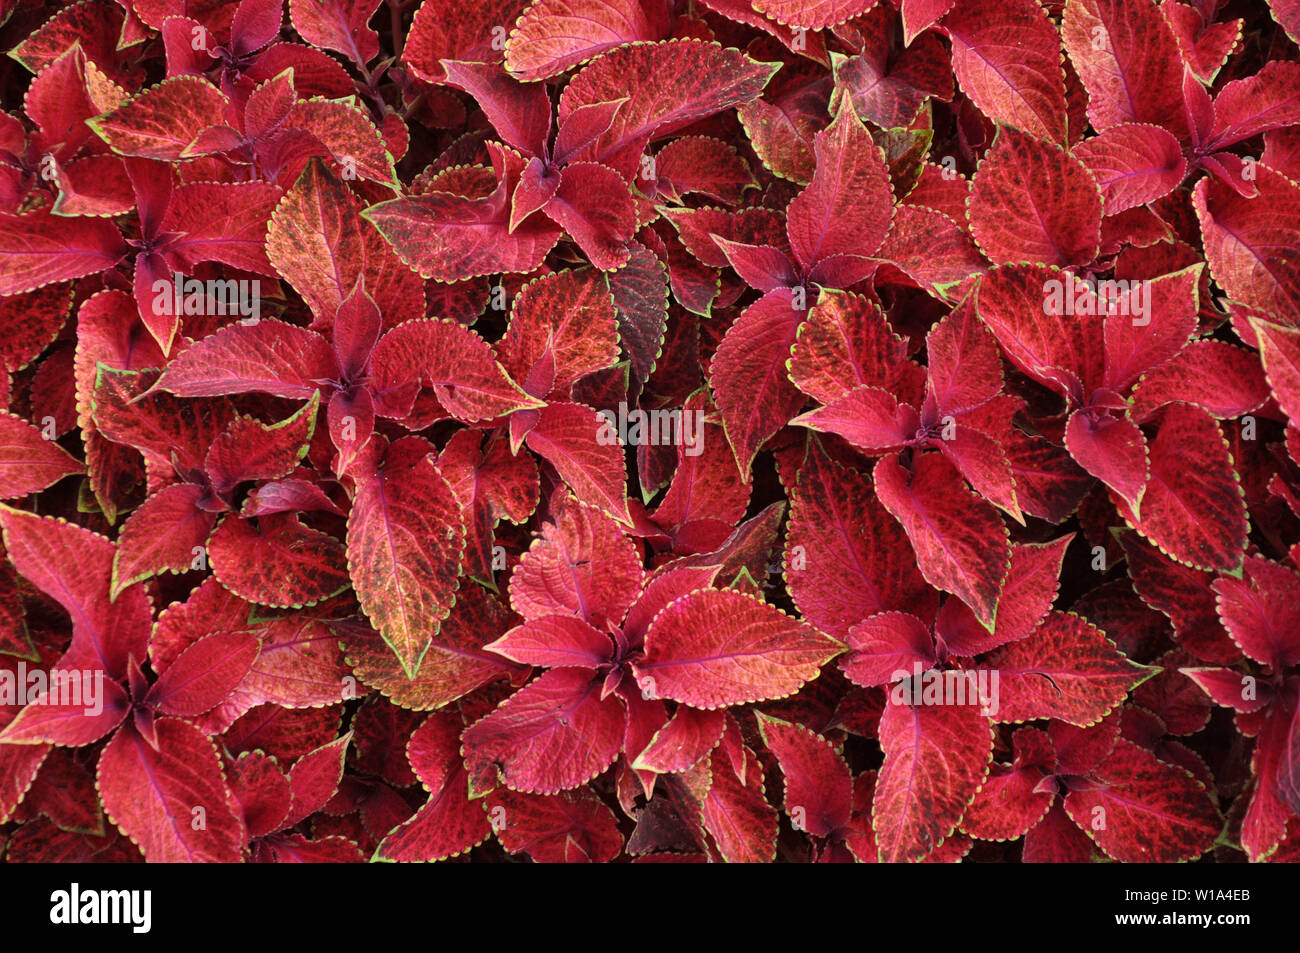 Feuilles rouge vif de plante vivace, plectranthus scutellarioides coleus.  Velours rouge décoratifs coléus fairway plantes Photo Stock - Alamy